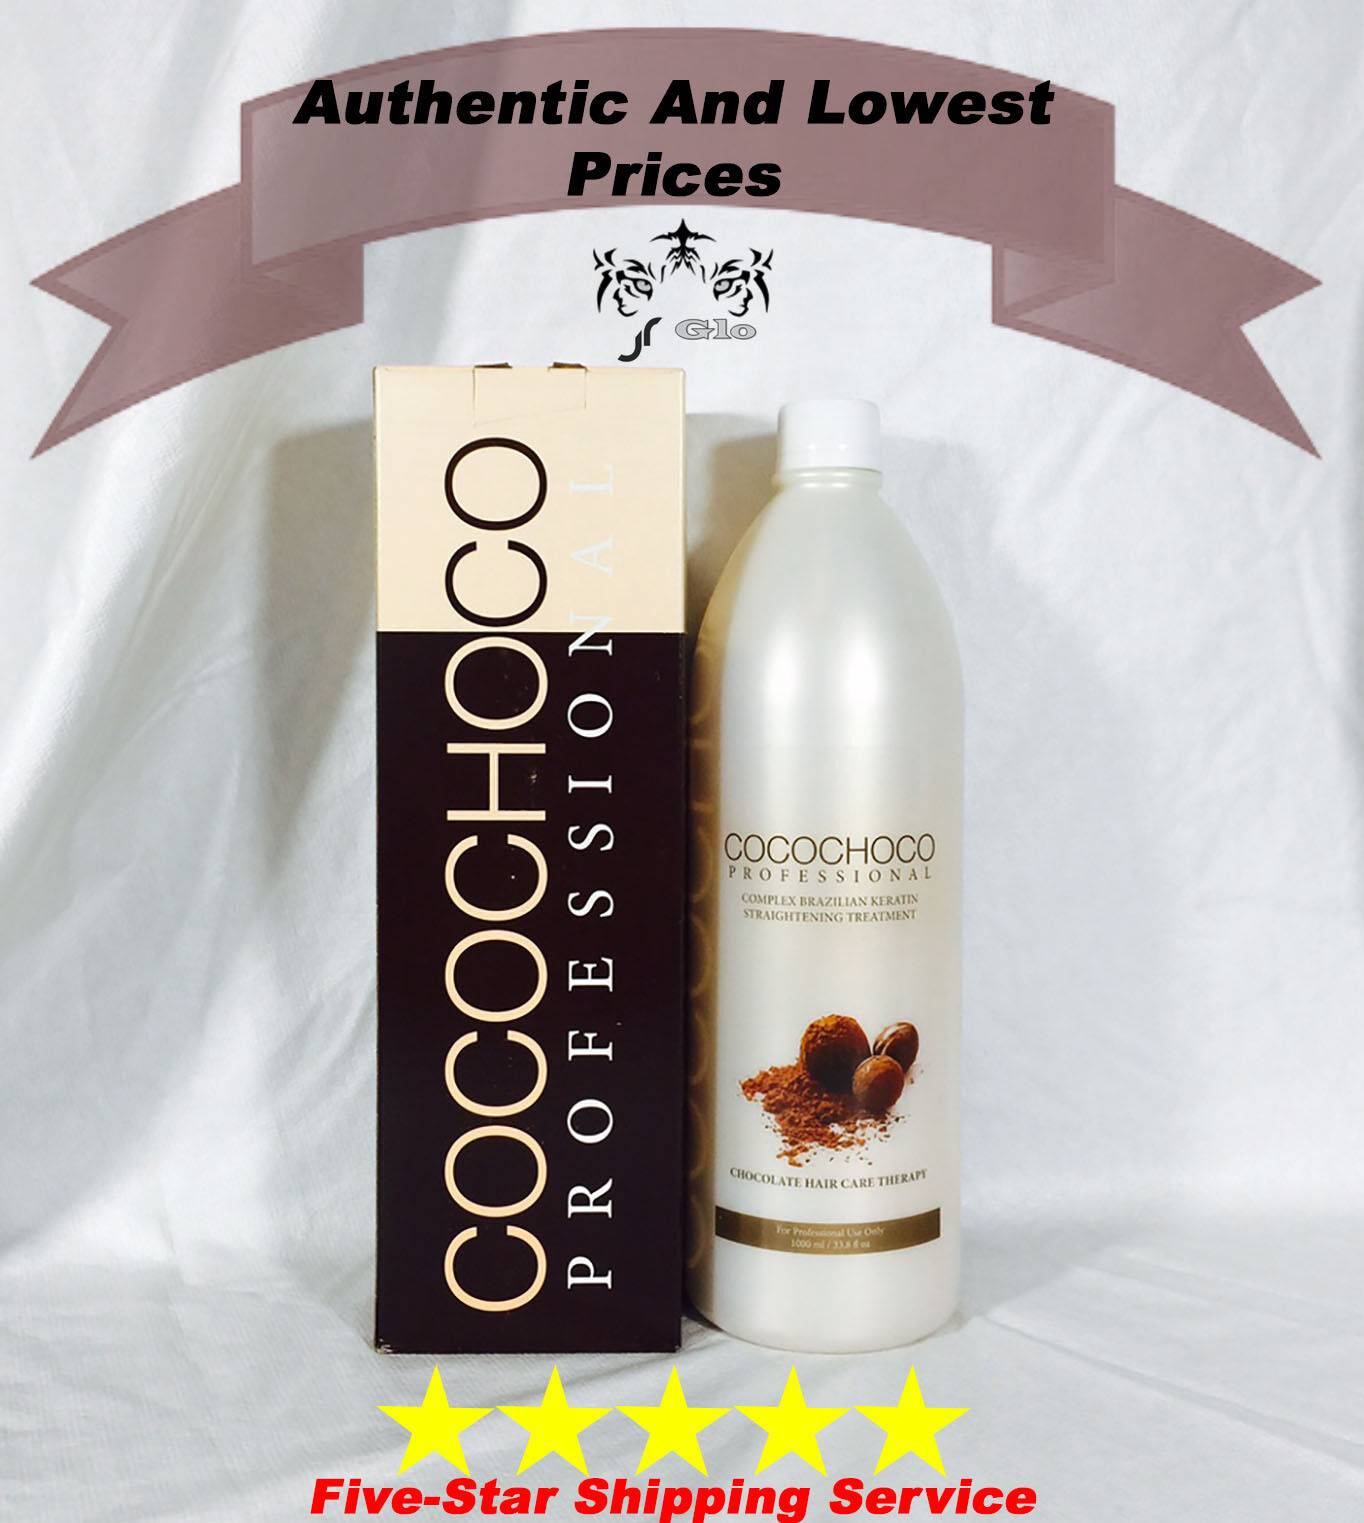 Cocochoco (коко чоко) кератин для выпрямления волос: инструкция по применению, цена процедуры в салоне, отзывы